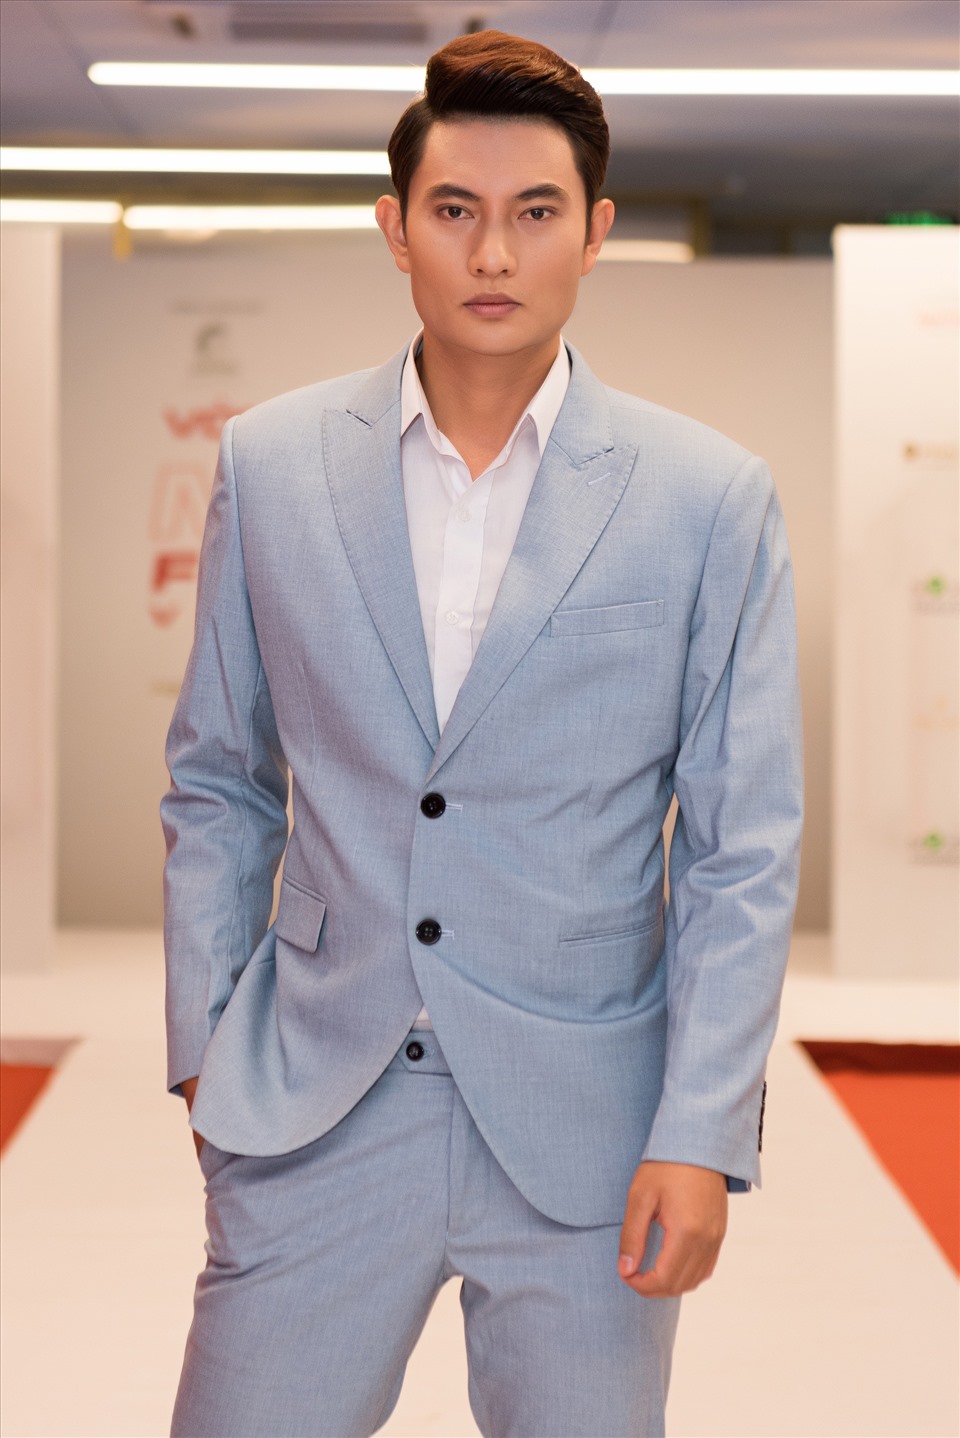 Mister Vietnam 2019 – Phạm Minh Quyền ngồi “ghế nóng” cuộc thi “Miss Fitness Vietnam 2022“. Ảnh: NVCC